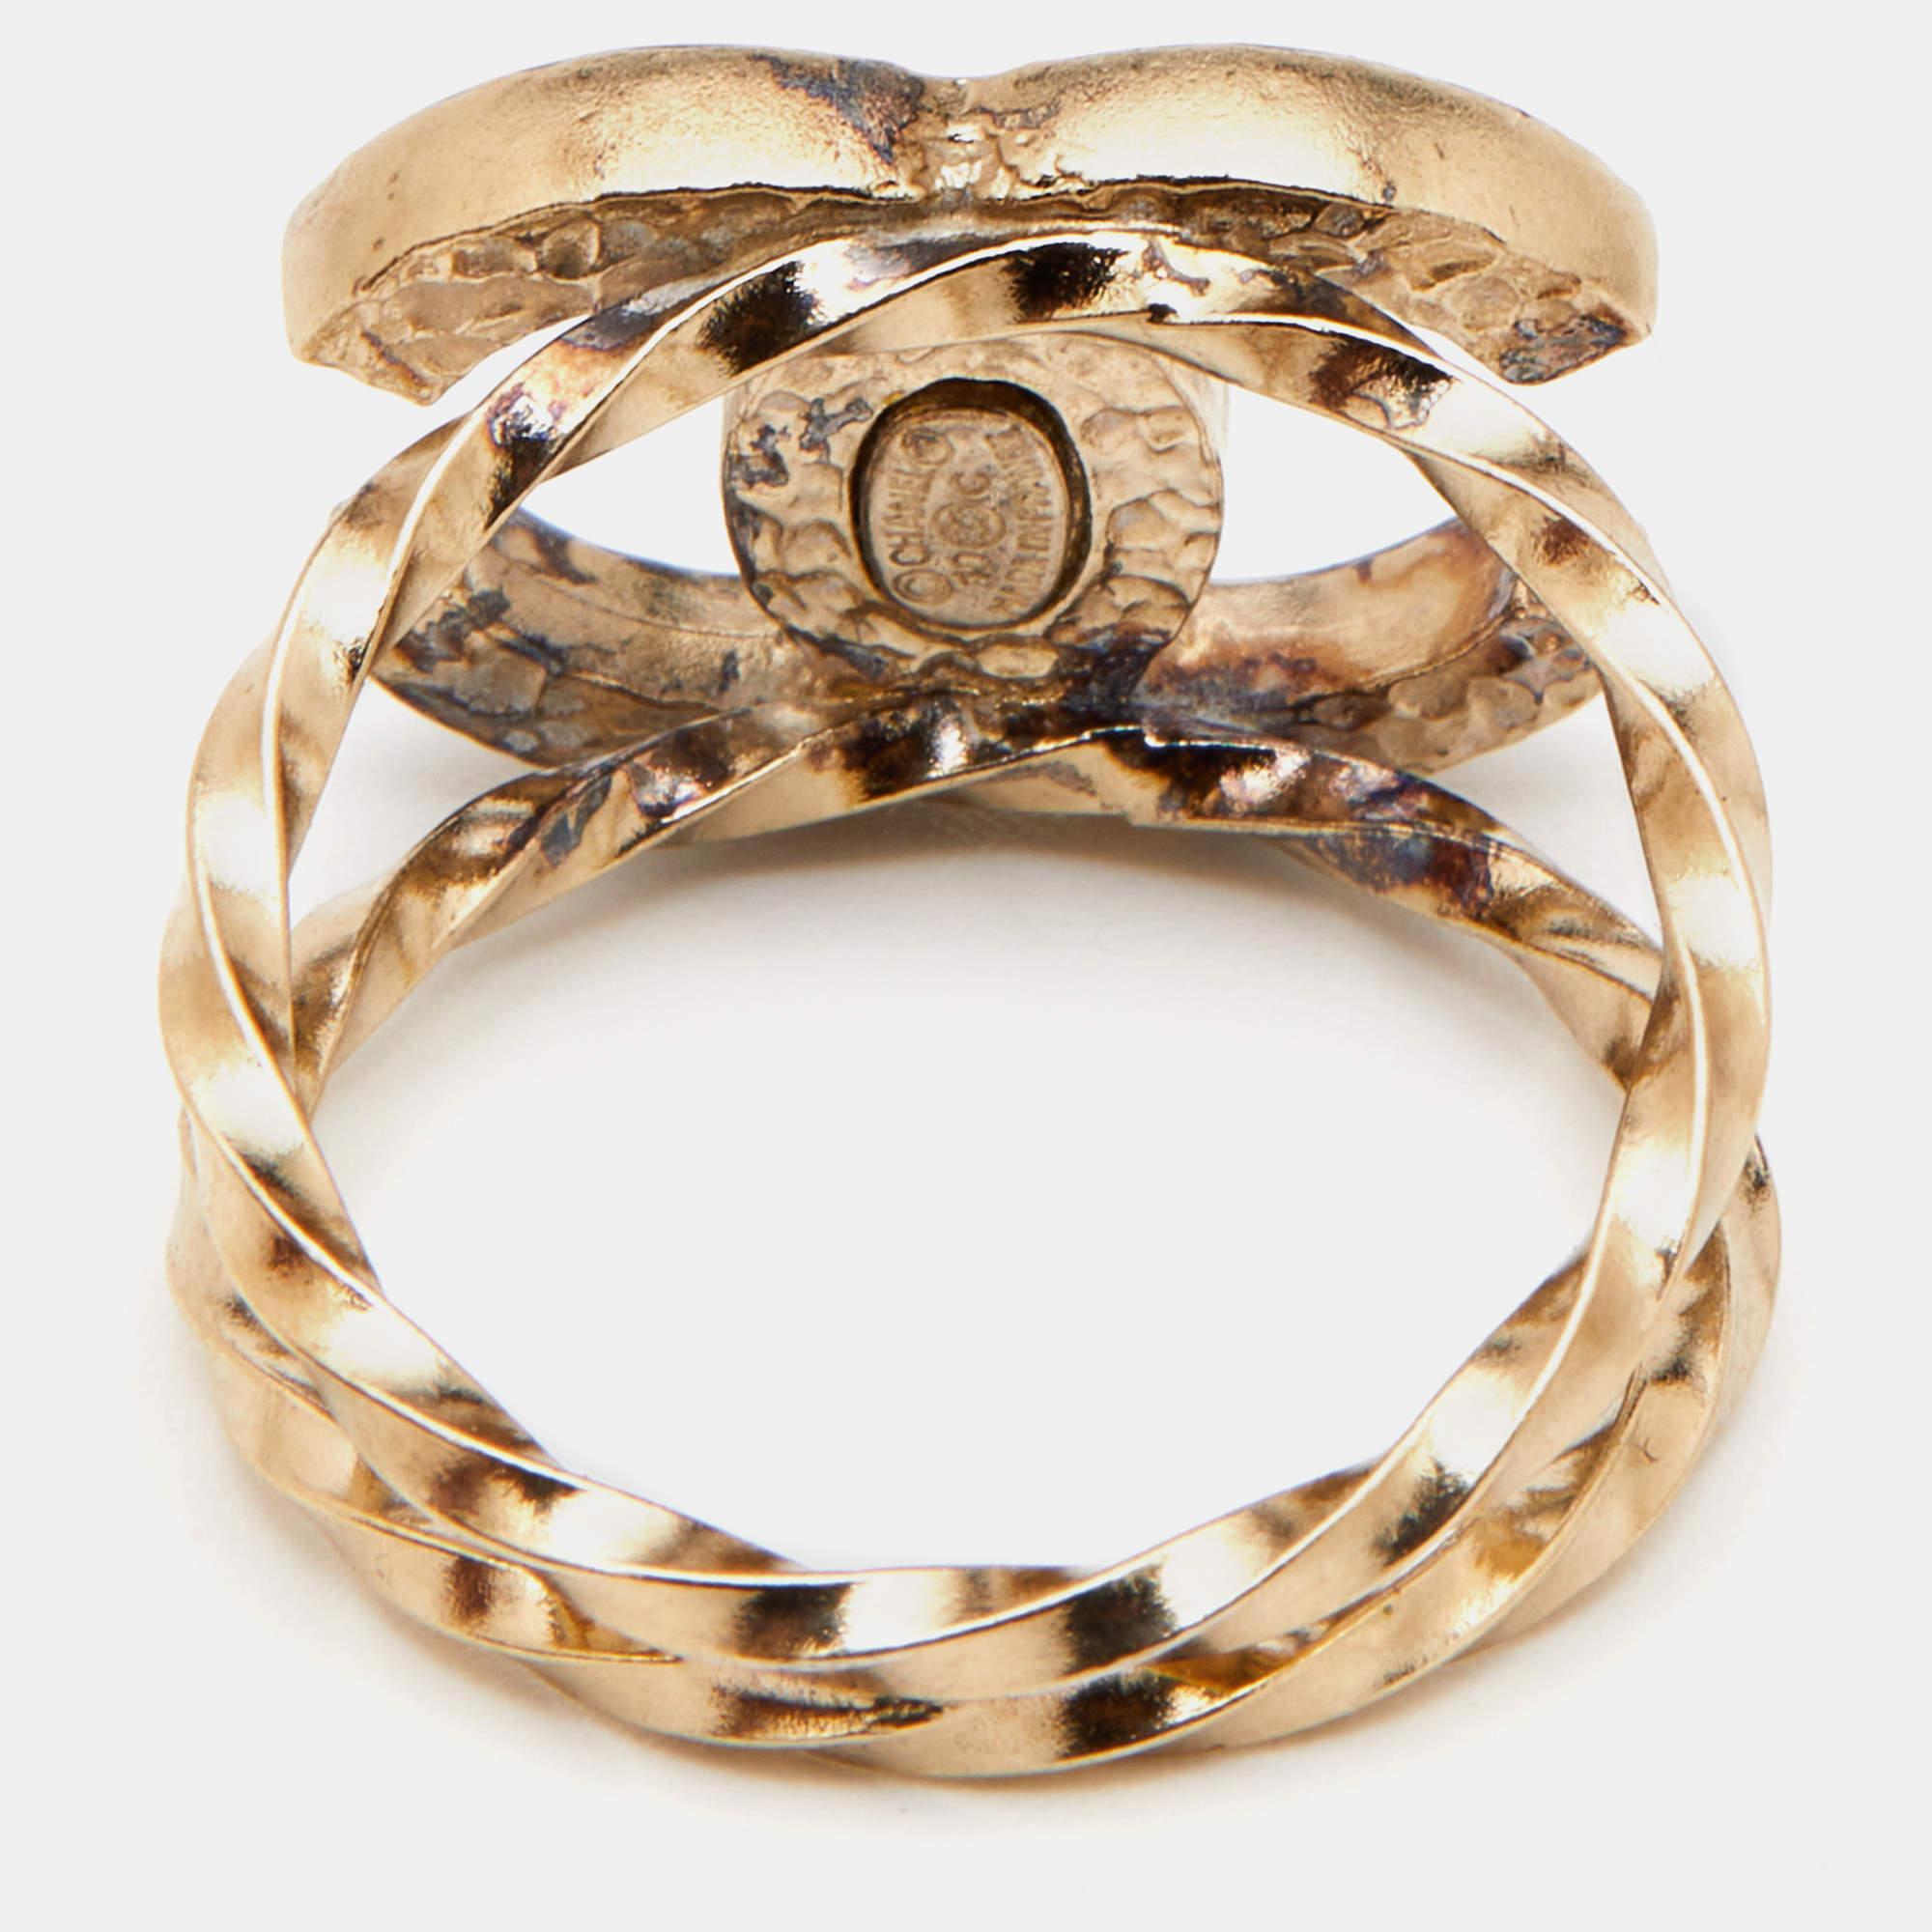 Um Ihre Finger auf die eleganteste Weise zu schmücken, bringen wir Ihnen diesen Designer-Ring. Er wurde aus hochwertigen MATERIALEN gefertigt und wird Ihren Look sofort aufwerten.

